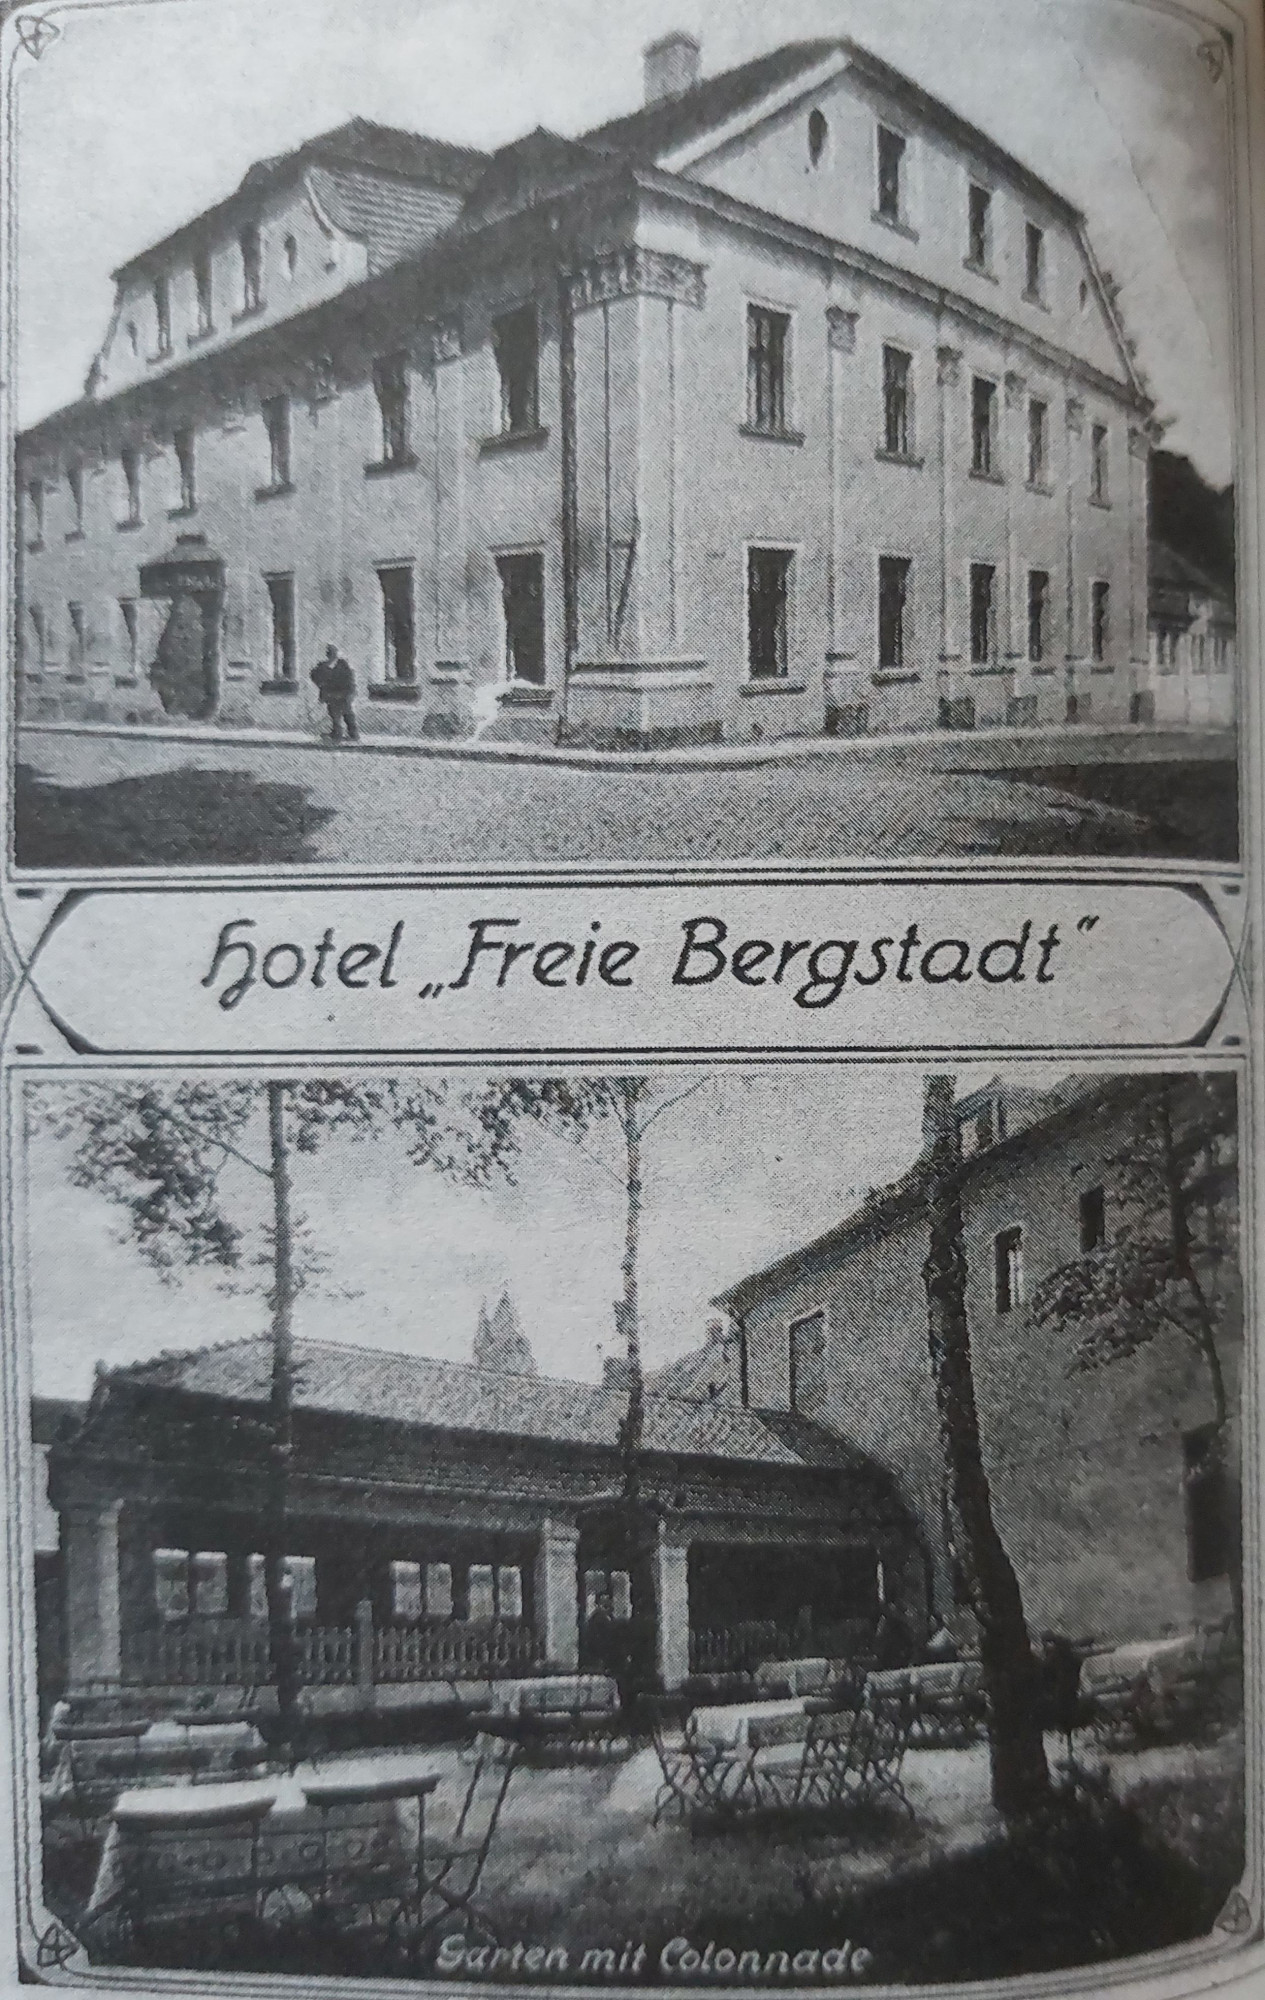 Budynek dawnego hotelu Wolne Miasto Górnicze, z ogrodem. Pocztówka ze zbiorów Beaty i Jacka Kalke